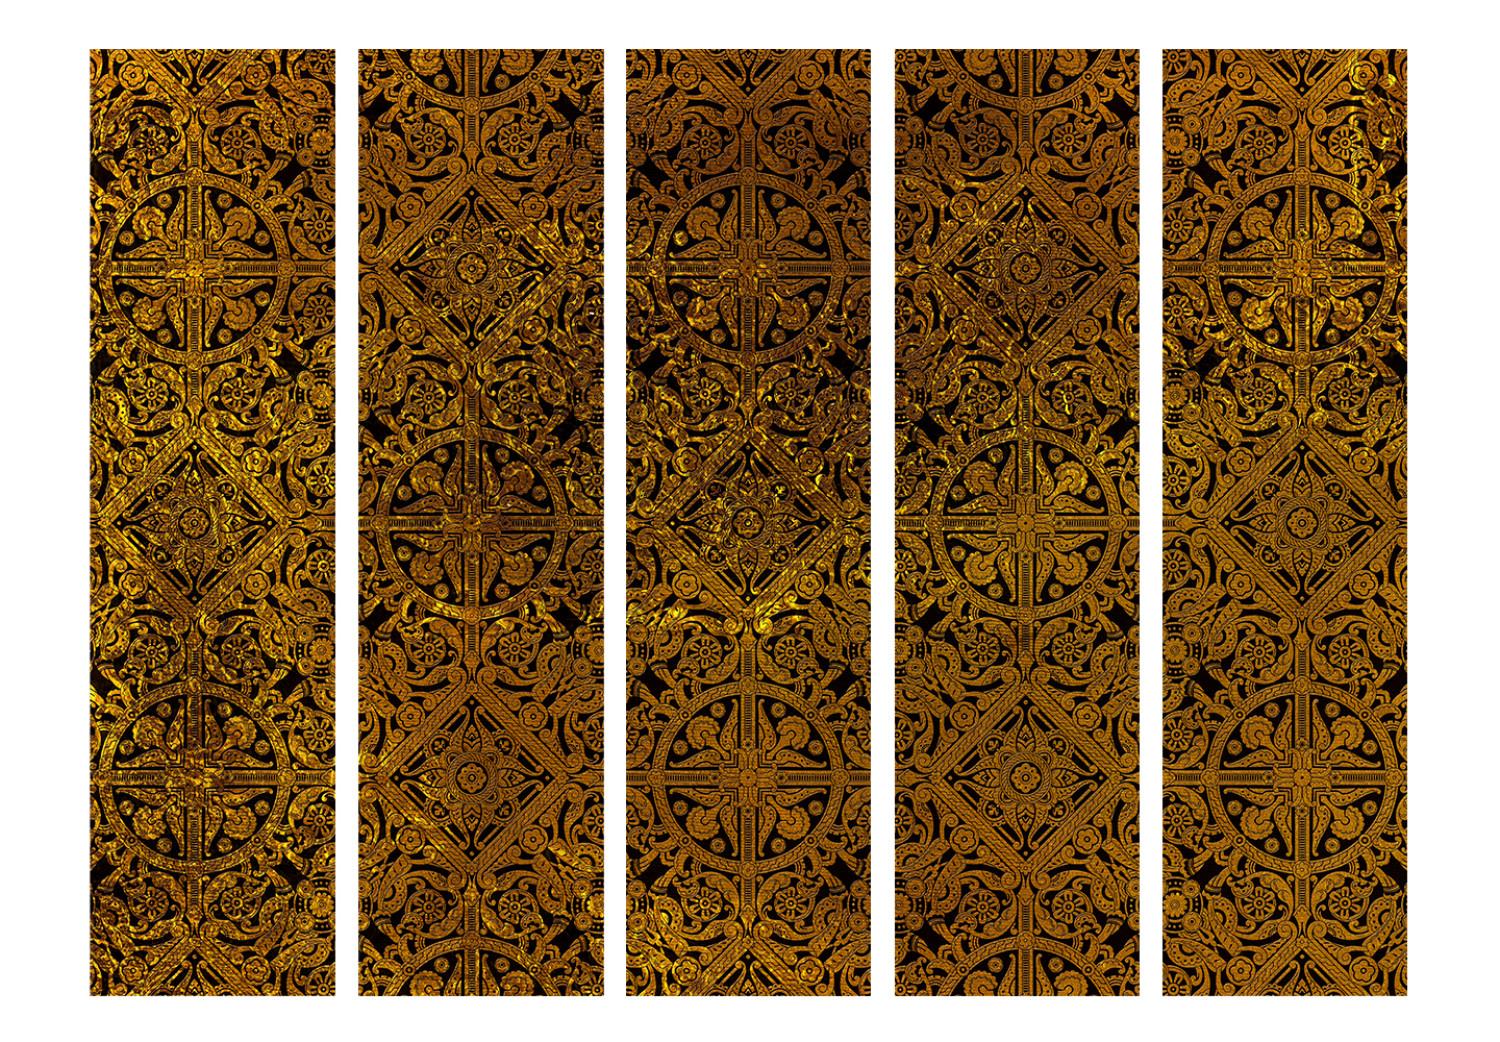 Biombo decorativo Tesoro celta II (5 partes) - diseño étnico dorado en estilo retro